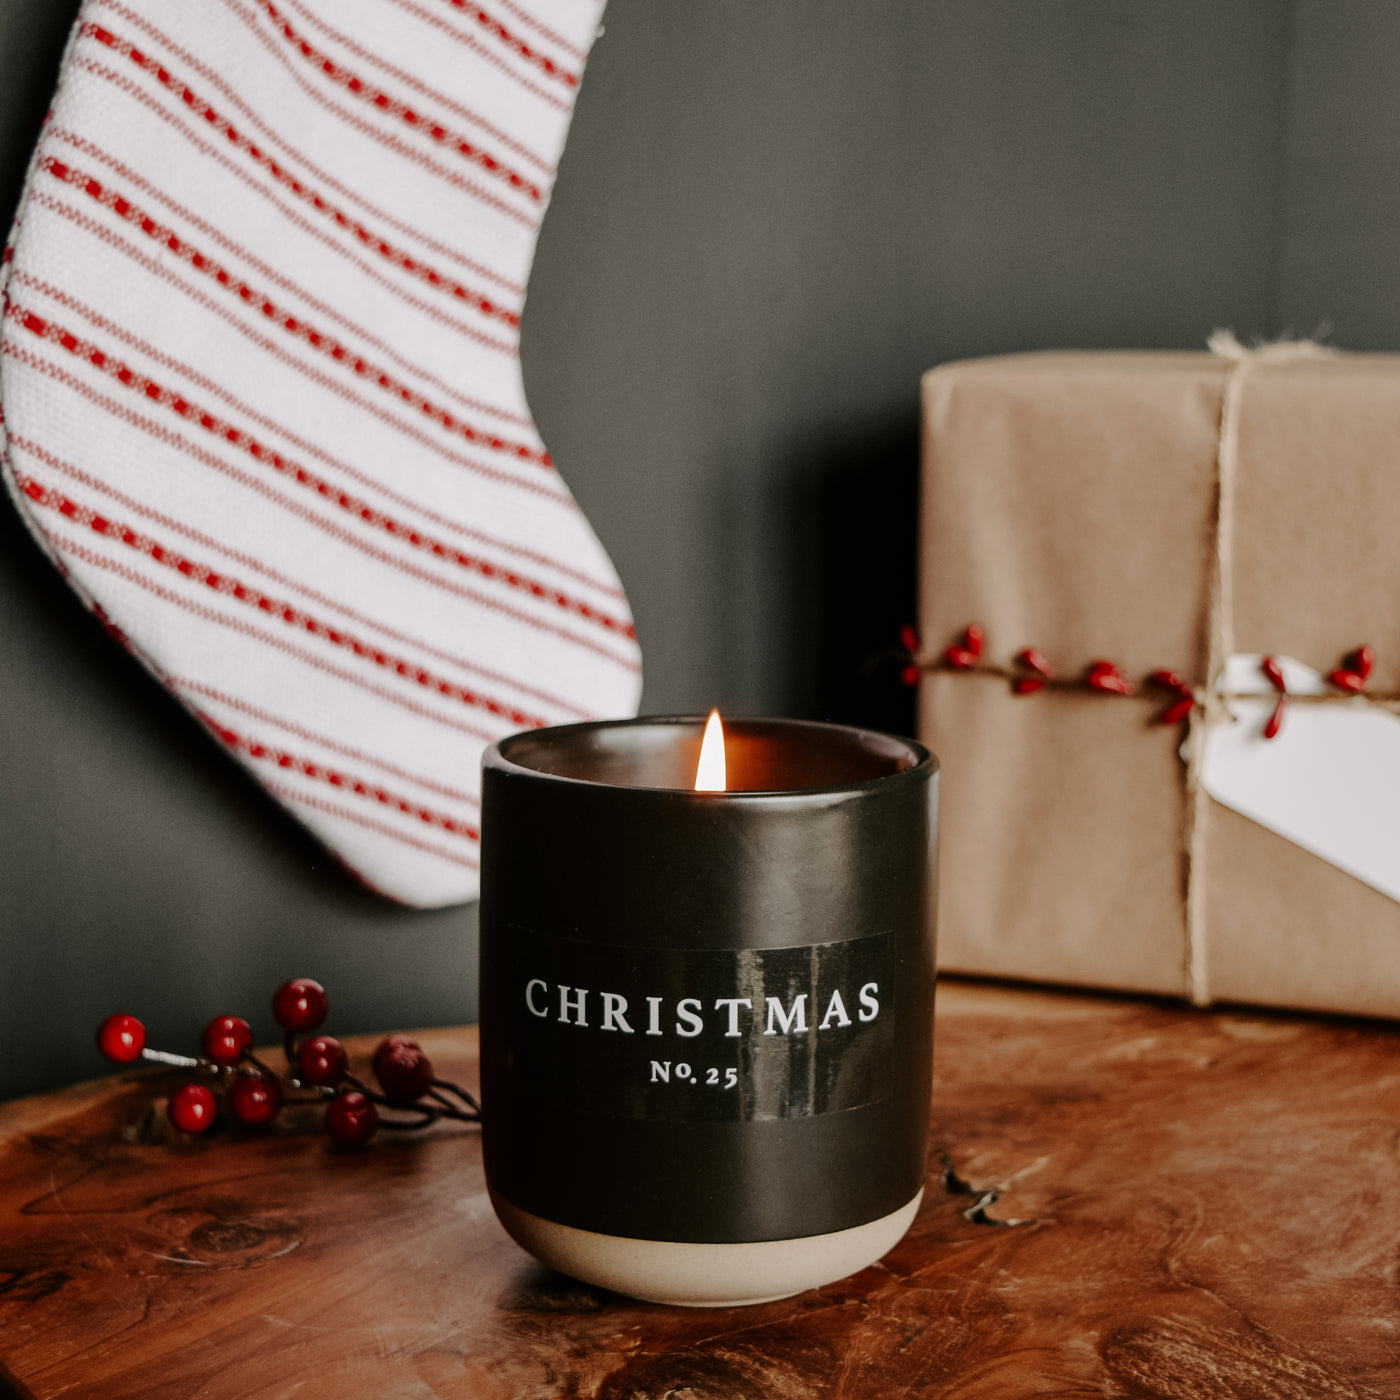 Christmas Soy Candle - Black Stoneware Jar - 12 oz